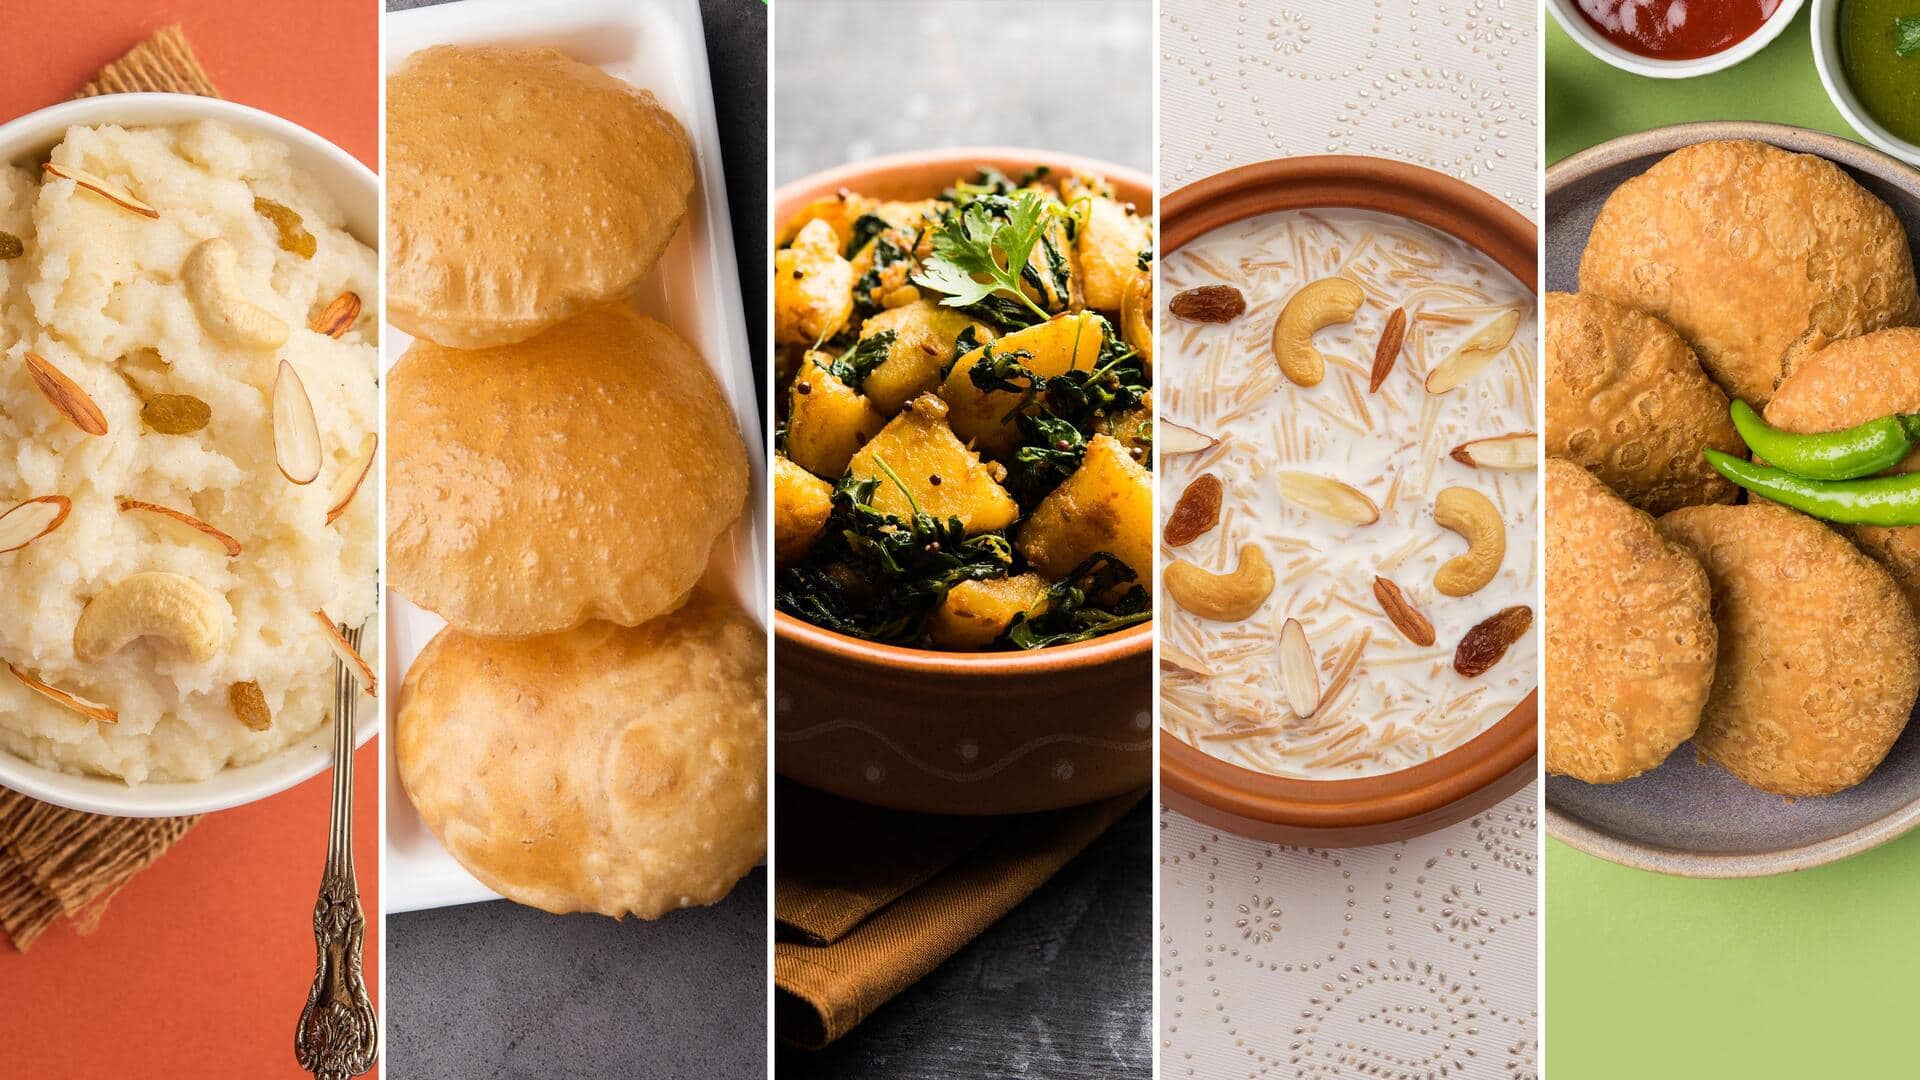 करवा चौथ के दिन घर पर बनाएं ये 5 स्वादिष्ट व्यंजन, आसान है इनकी रेसिपी